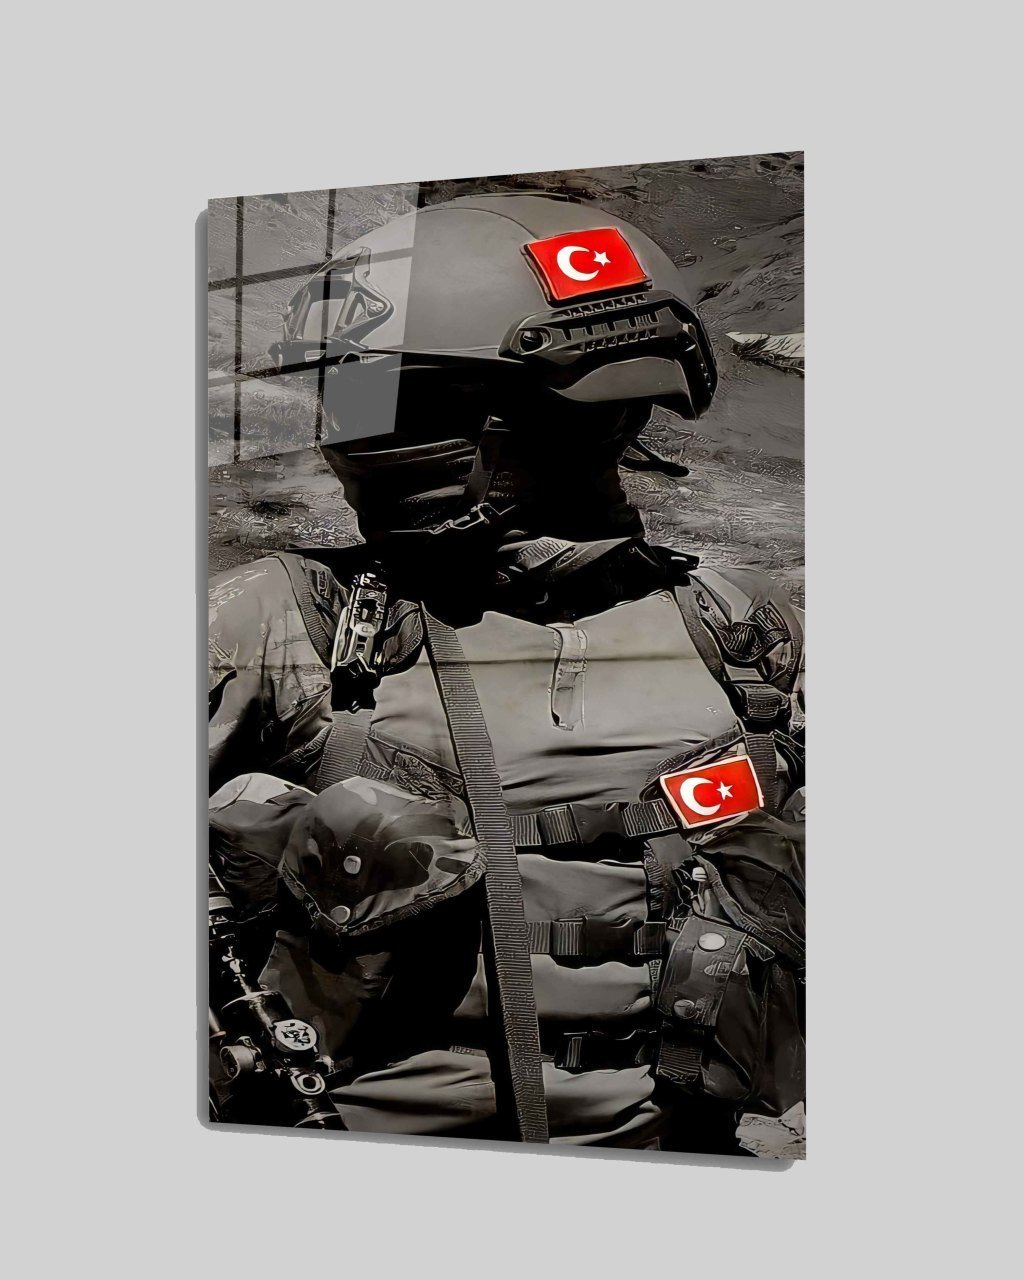 İdealizbiz Türk Askeri Cam Tablo  4mm Dayanıklı Temperli Cam